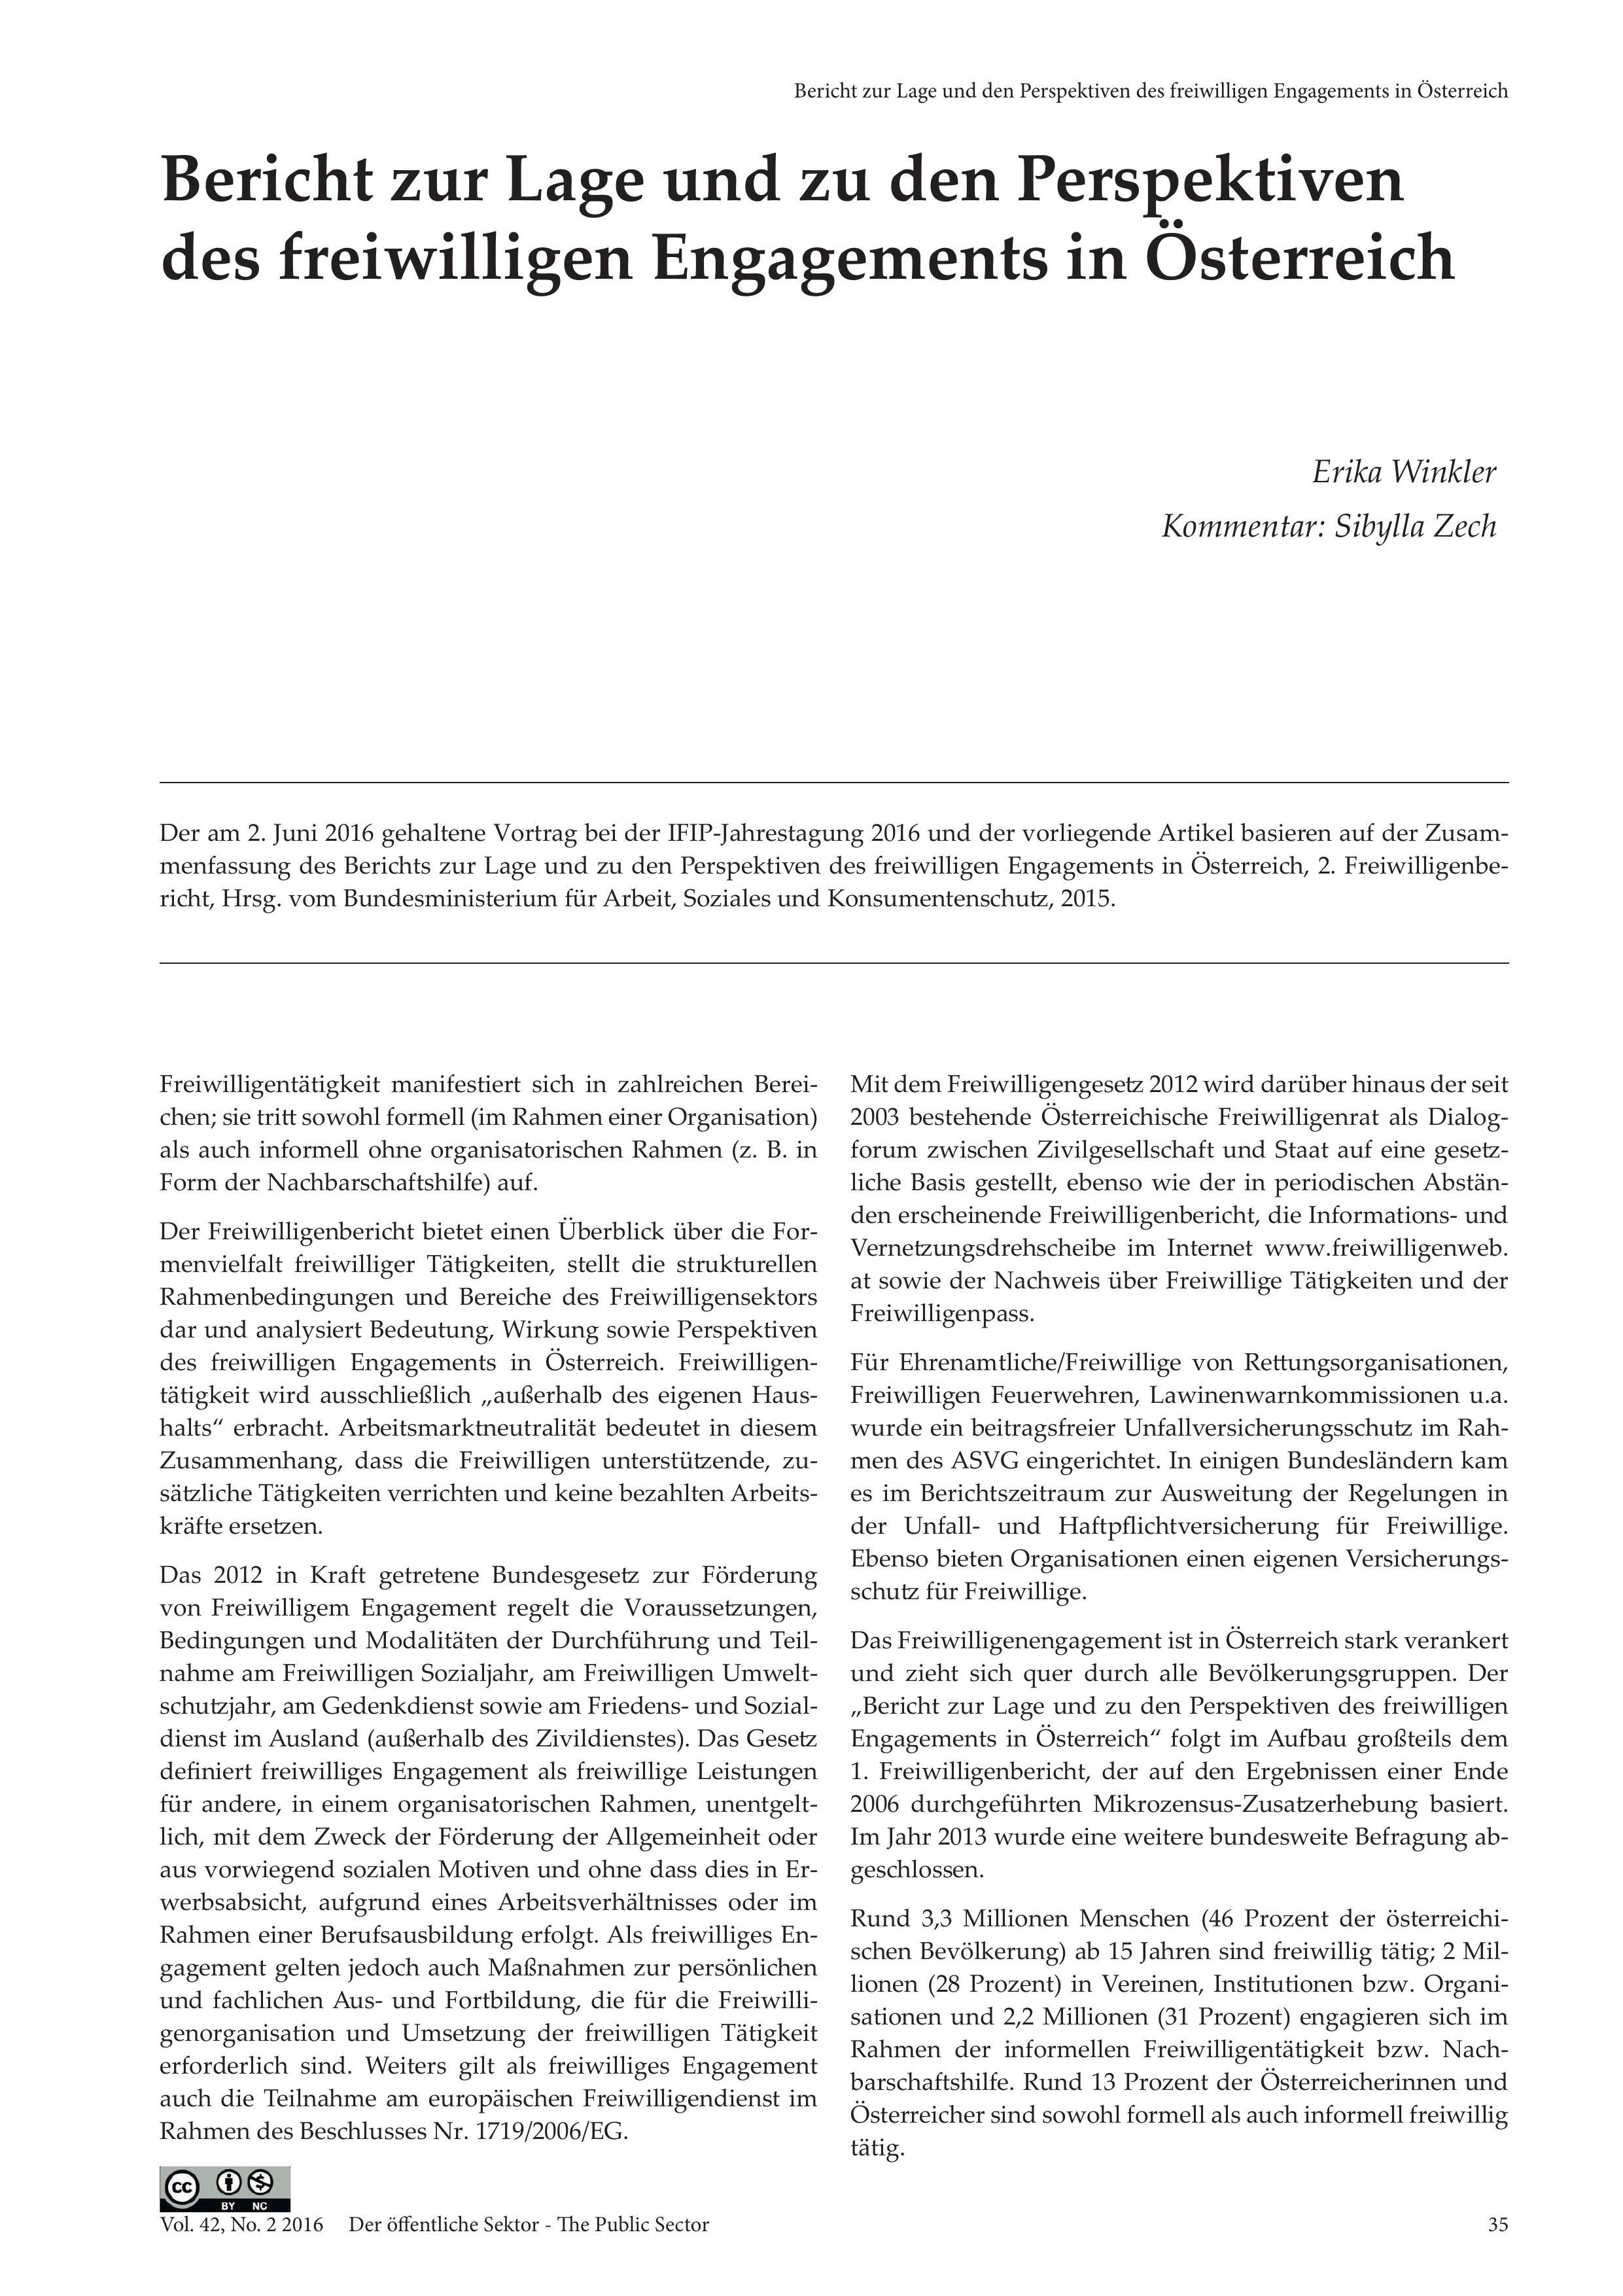 Bericht zur Lage und den Perspektiven des freiwilligen Engagements in Österreich (Kommentiert von Sibylla Zech)